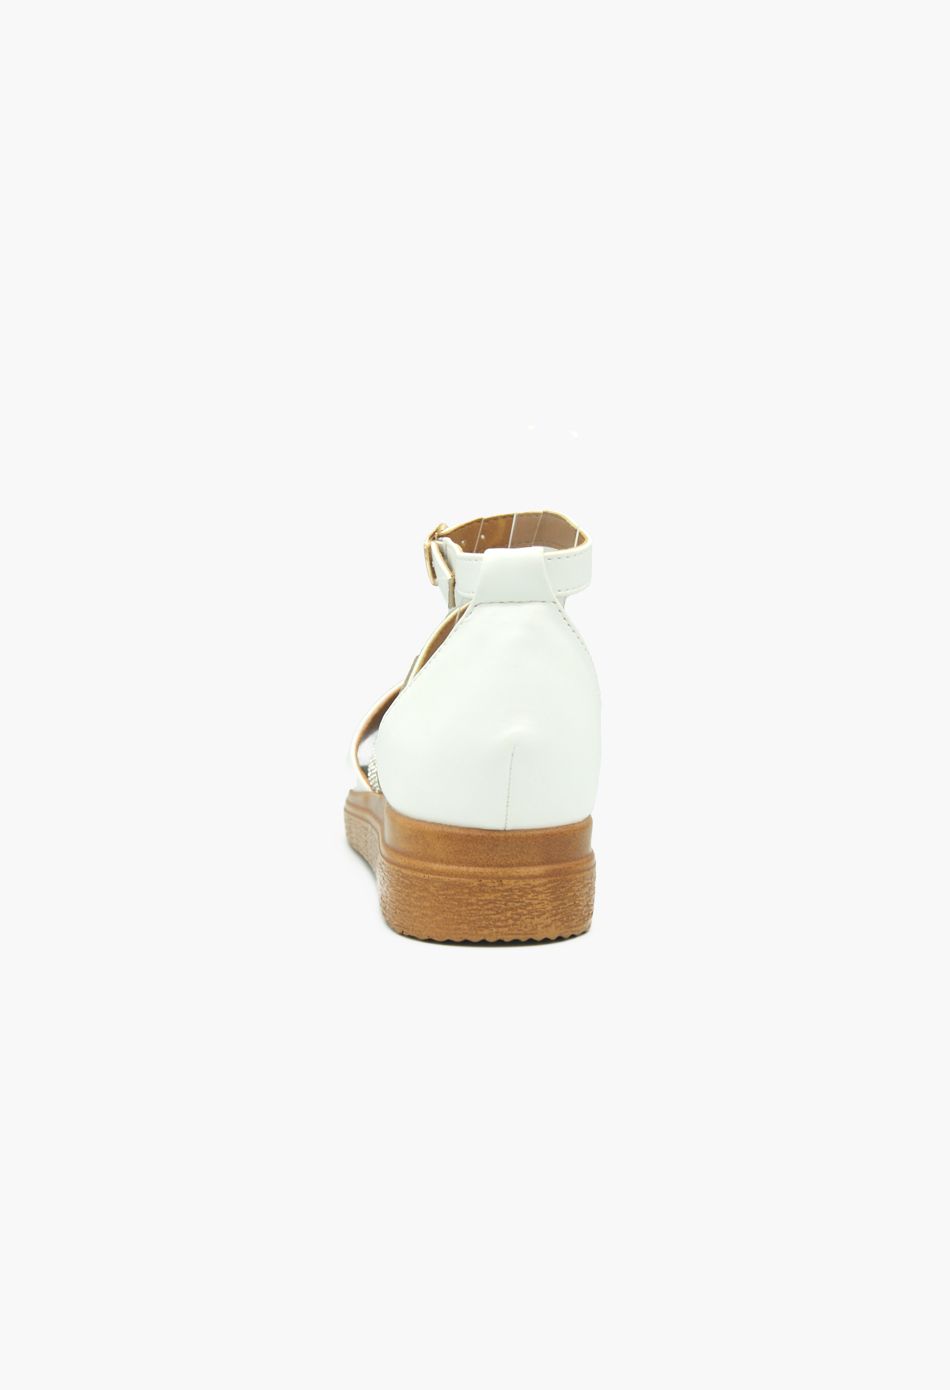 Σανδάλια με Λοξό Λουράκι απο Strass Καφέ Λευκό / 174-white Ανοιχτά Παπούτσια joya.gr